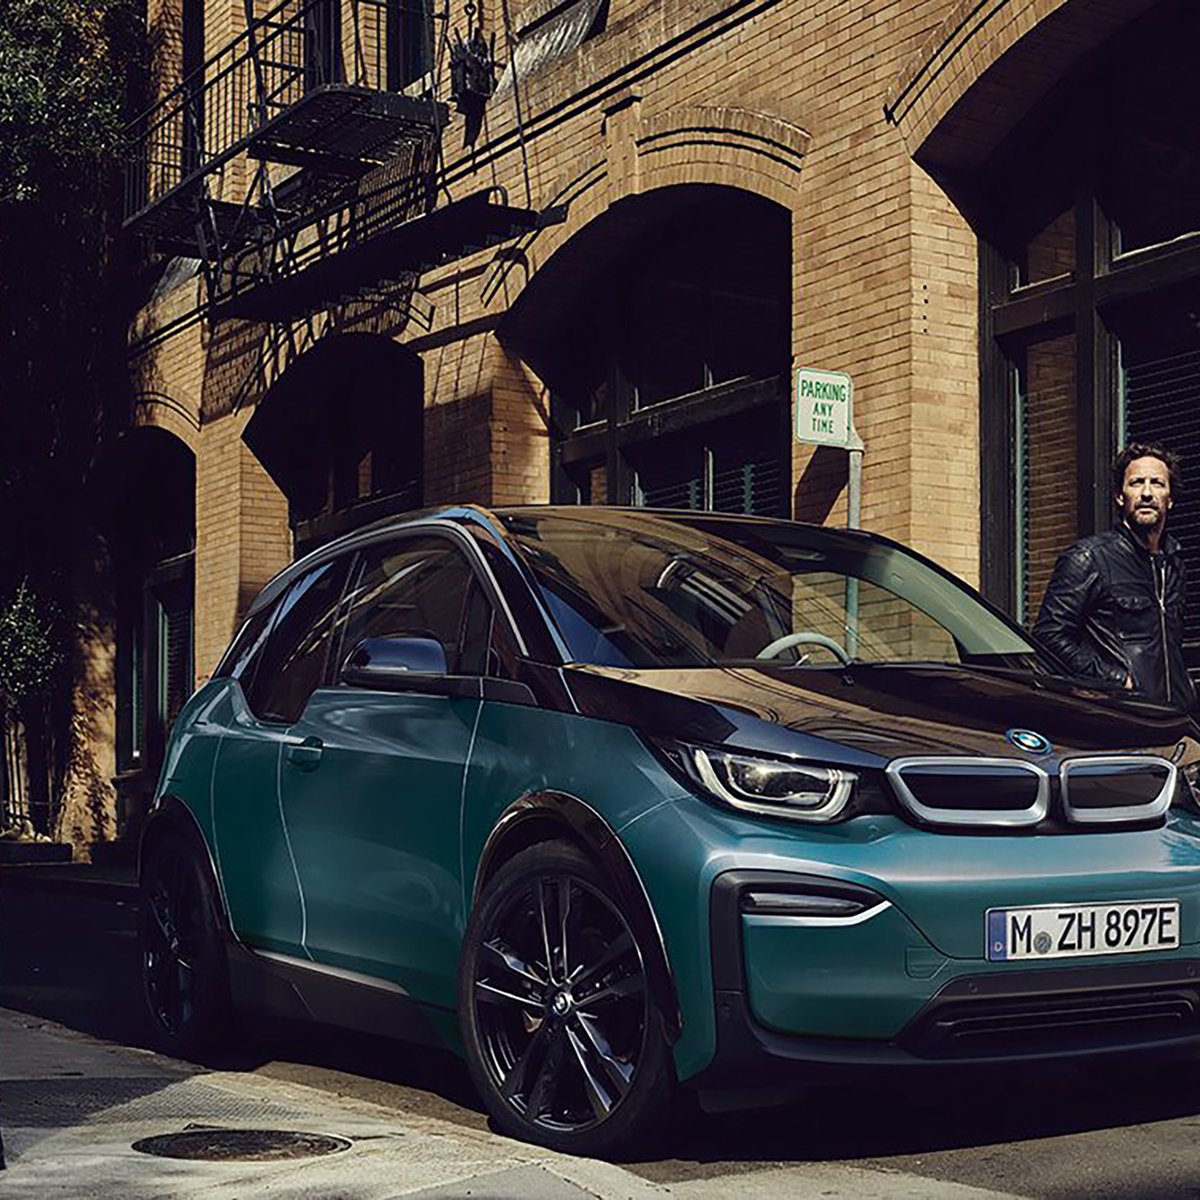 BMWs E-Auto-Portfolio vorerst noch mit einigen Lücken 